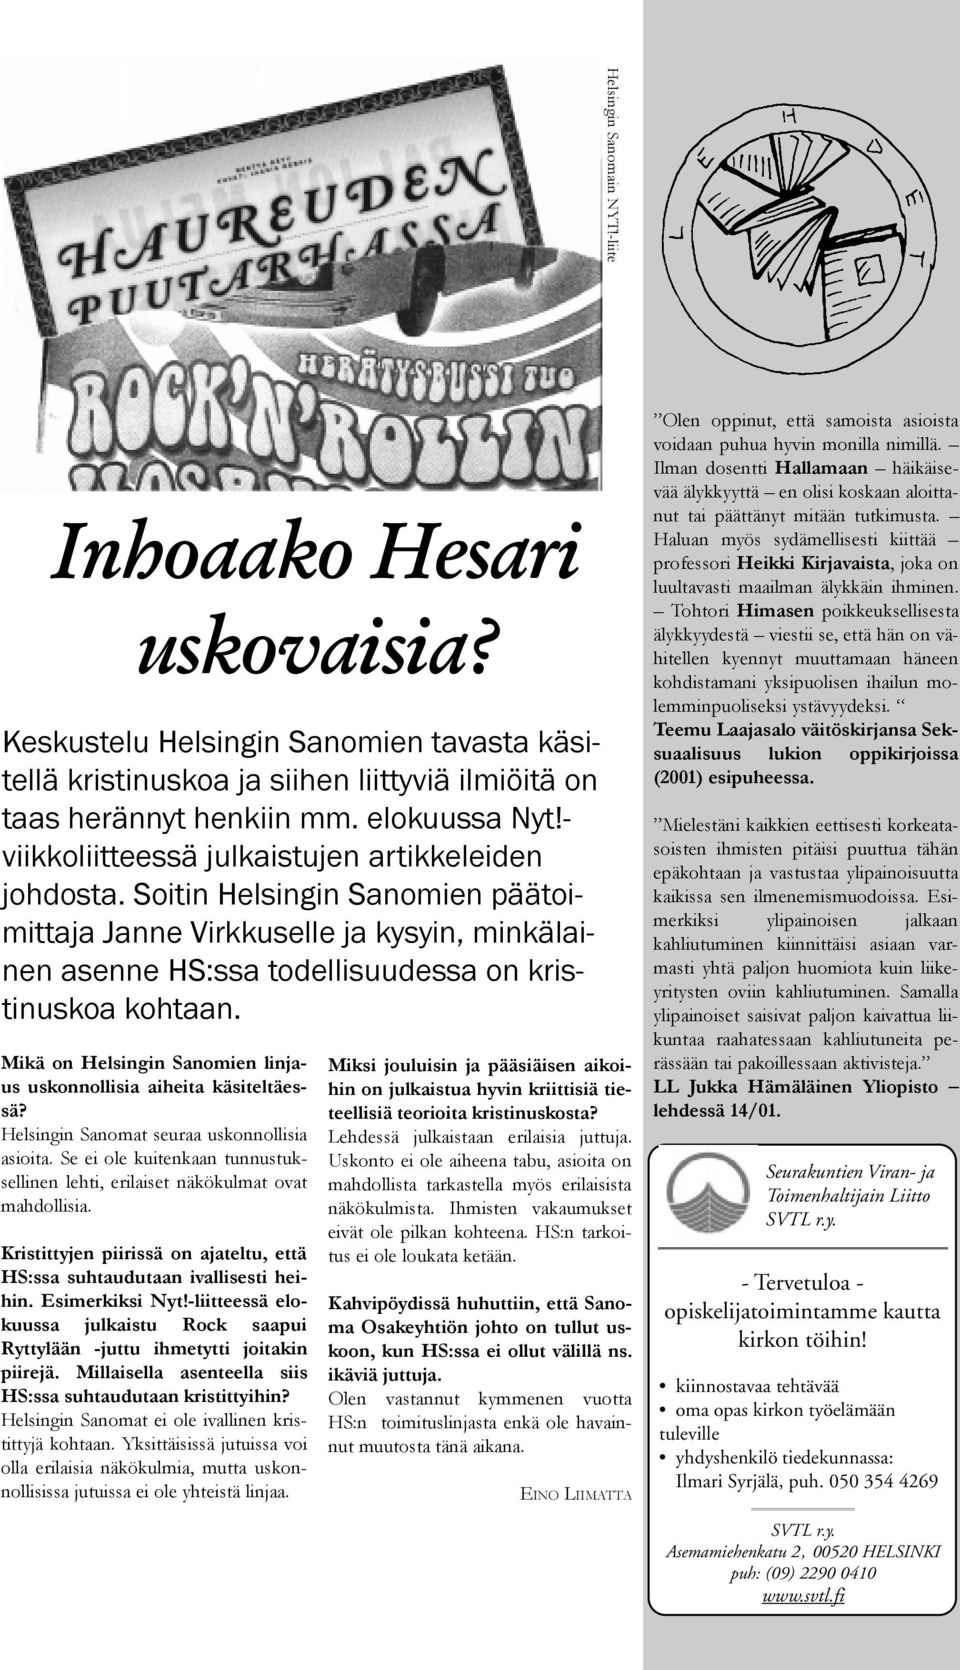 Mikä on Helsingin Sanomien linjaus uskonnollisia aiheita käsiteltäessä? Helsingin Sanomat seuraa uskonnollisia asioita.